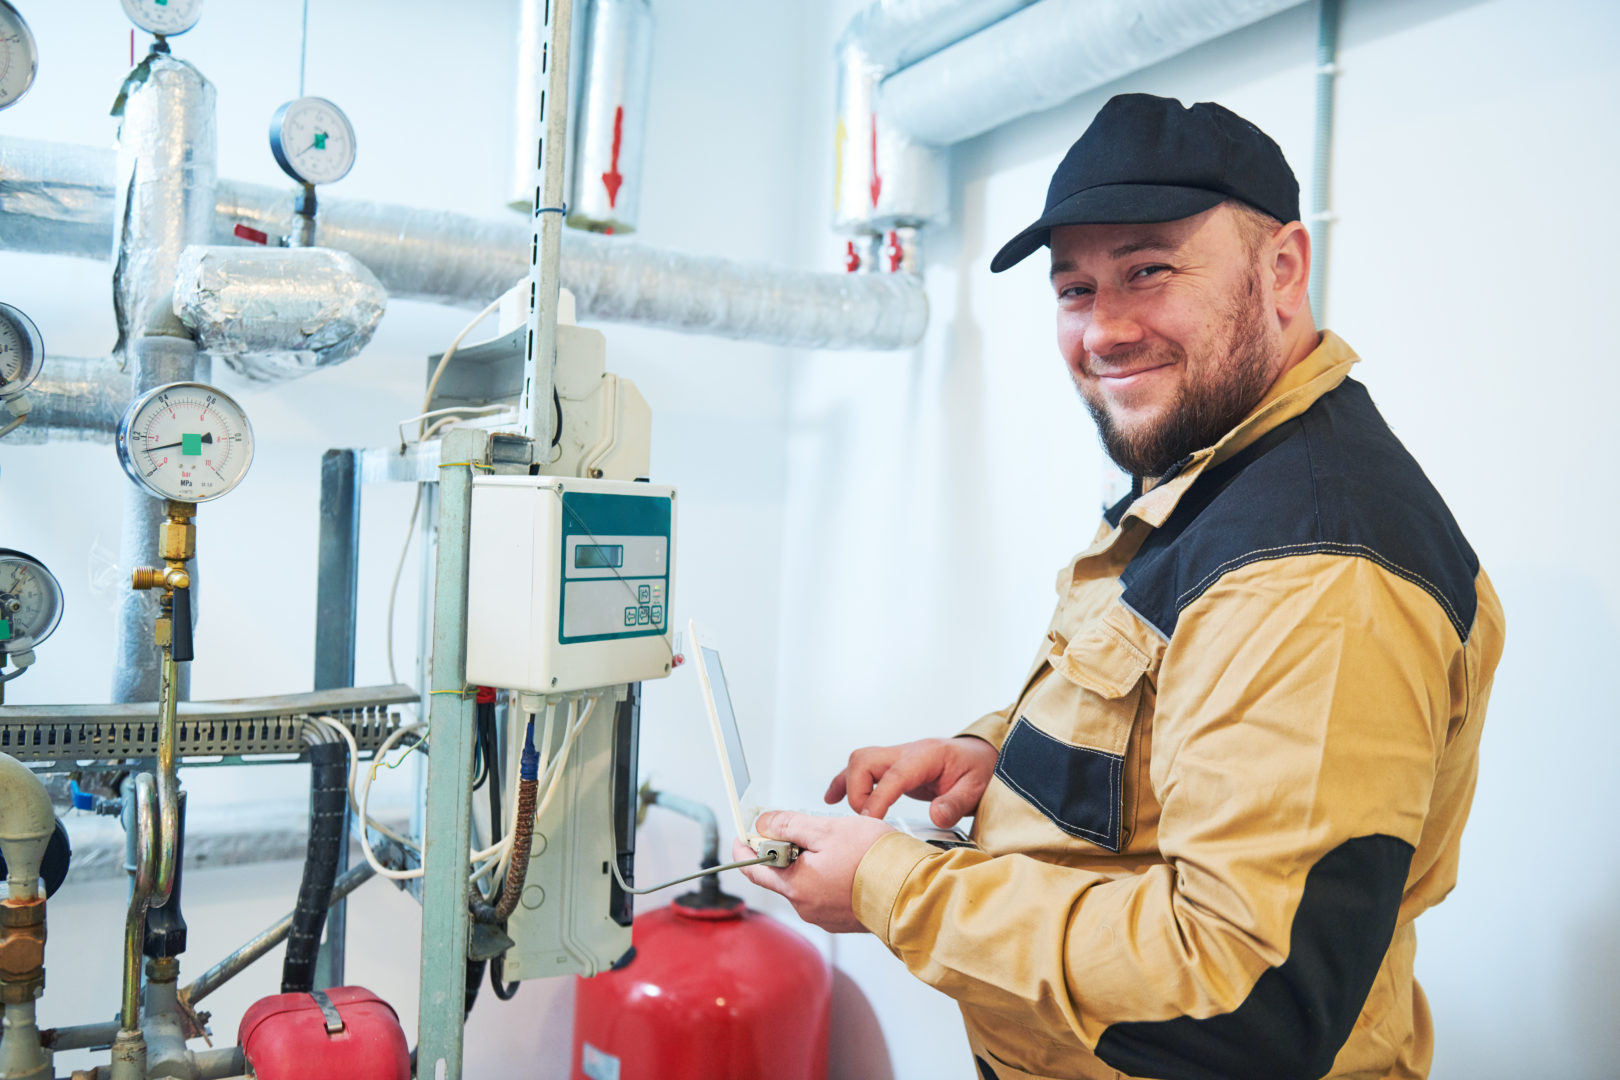 heating engineer or plumber inspector in boiler room taking readouts or adjusting meter